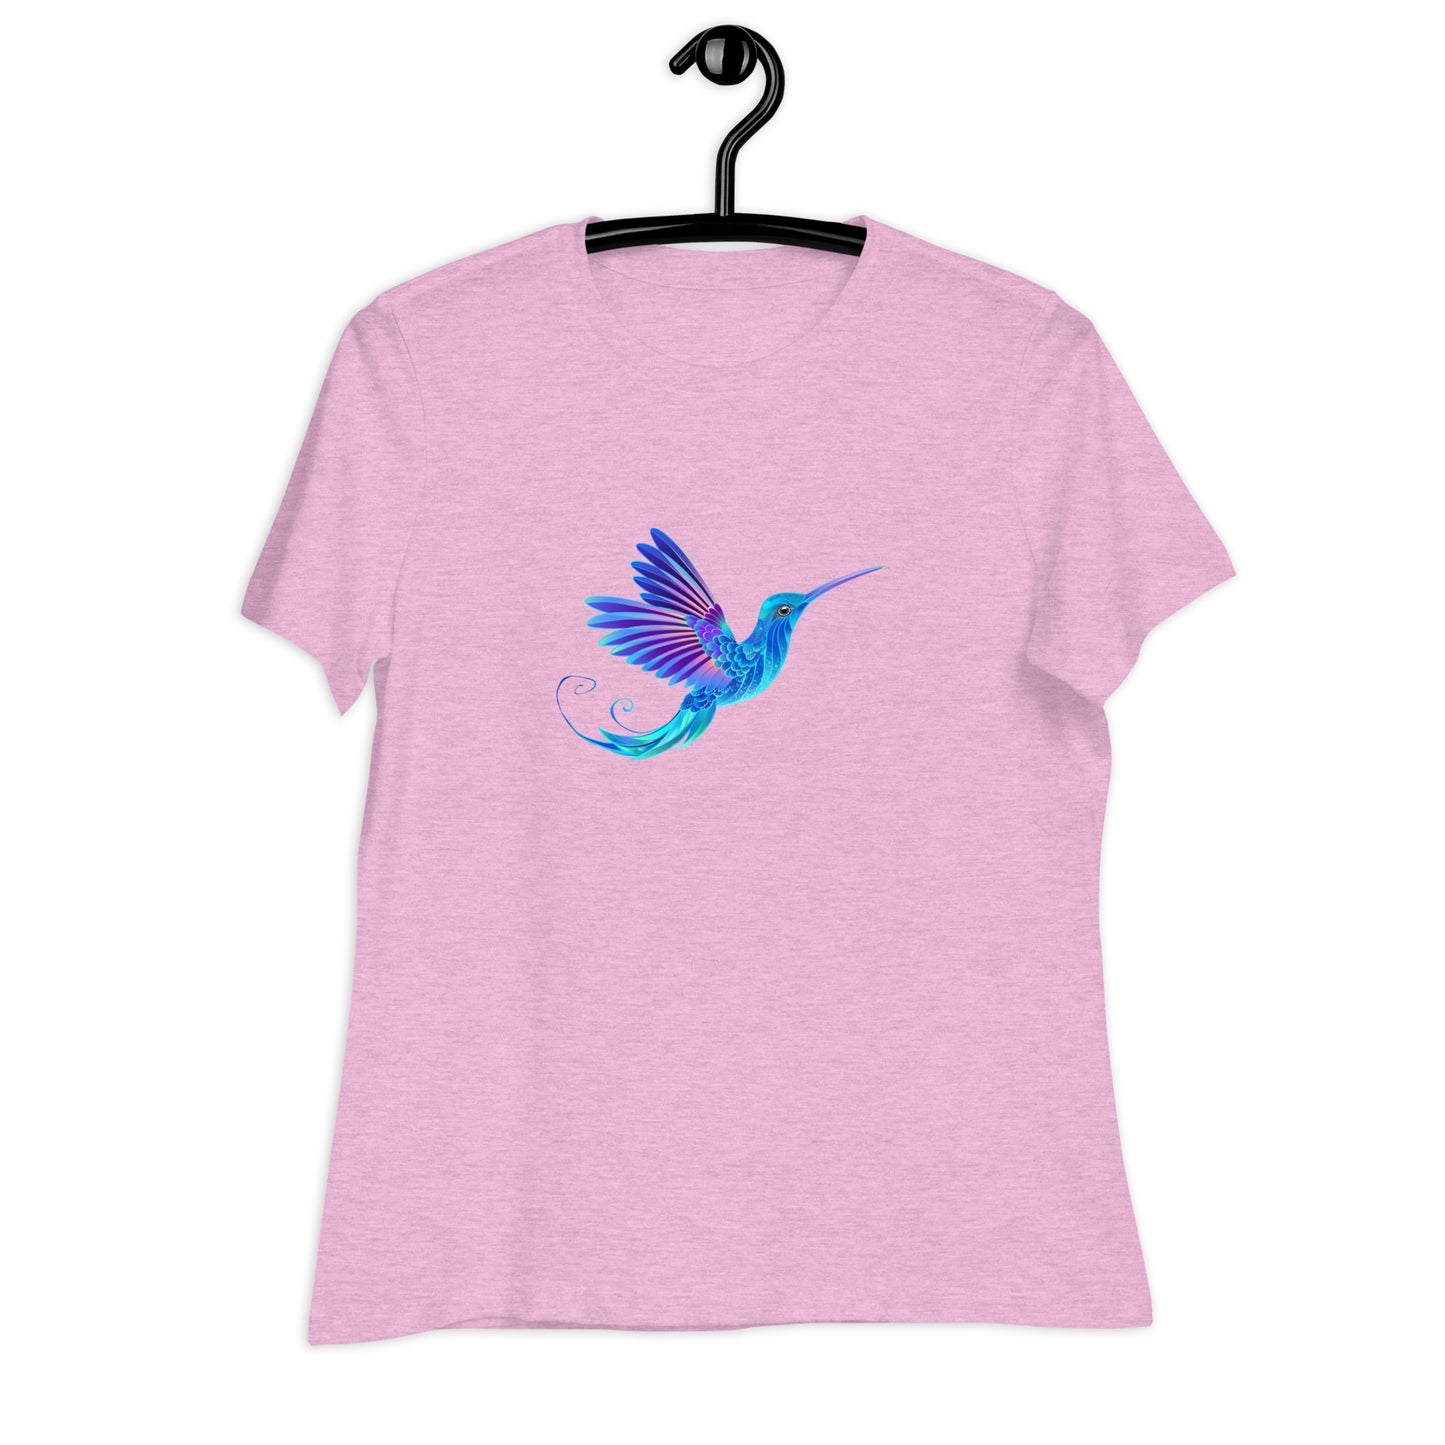 Women's Relaxed Soft & Smooth Premium Quality T-Shirt Magical Blue Hummingbird Design by IOBI Original Apparel